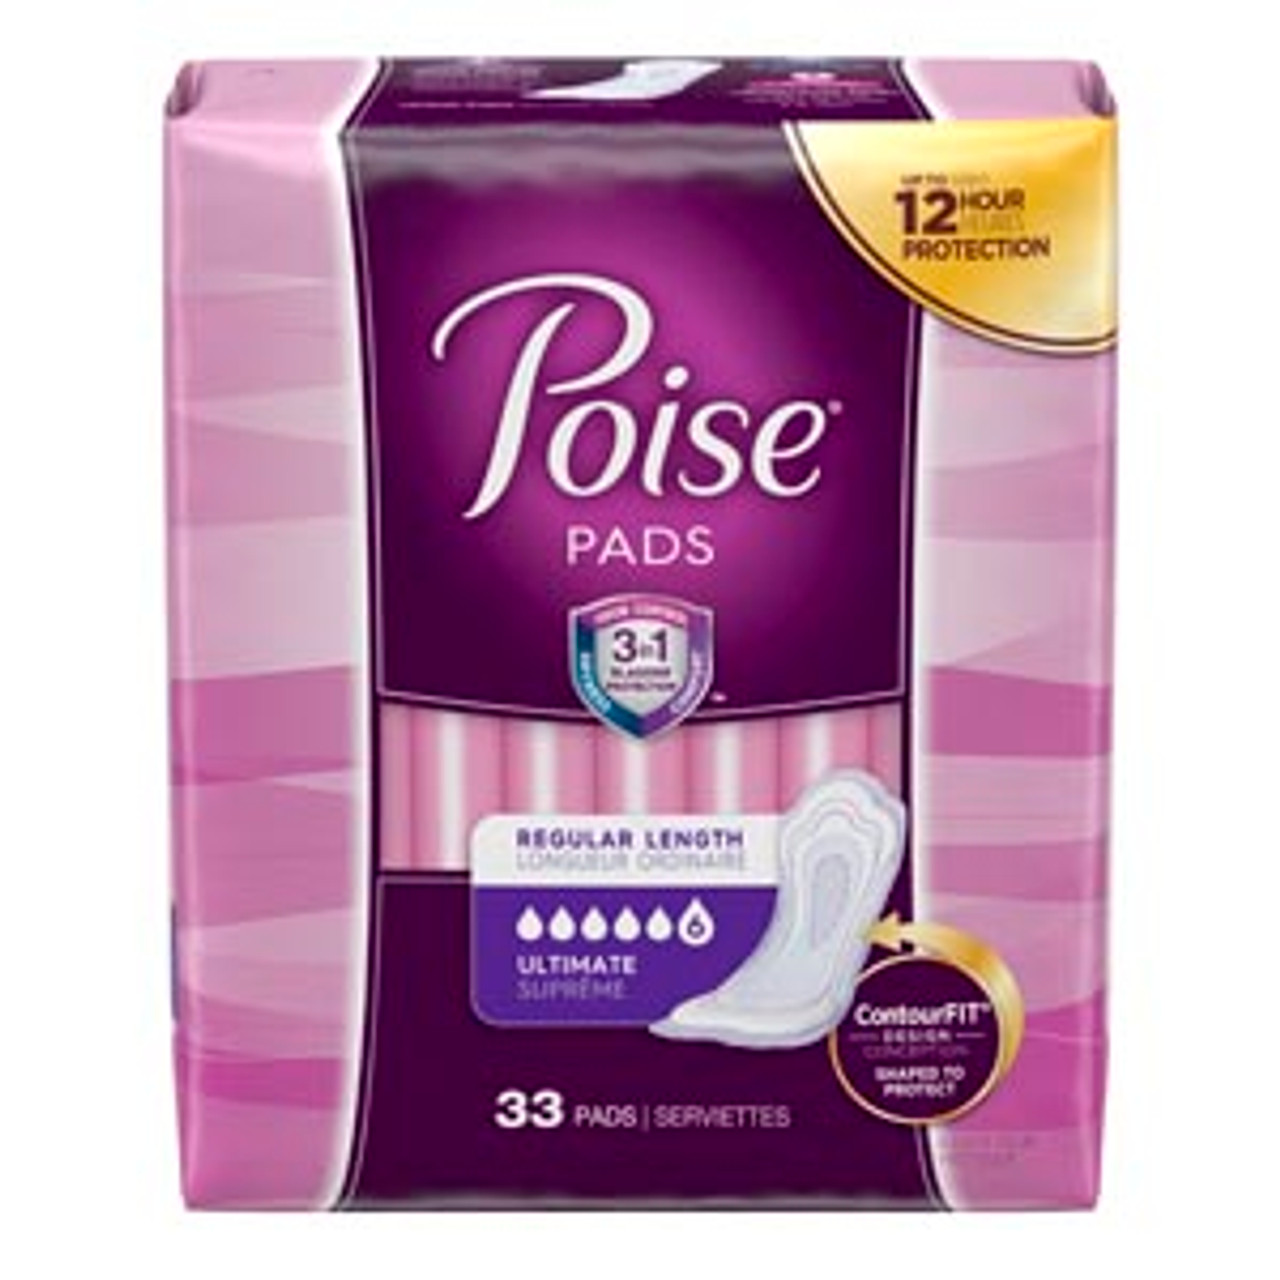 Buy Poise Pads Overnight 16 Bulk Pack Online at Chemist Warehouse®